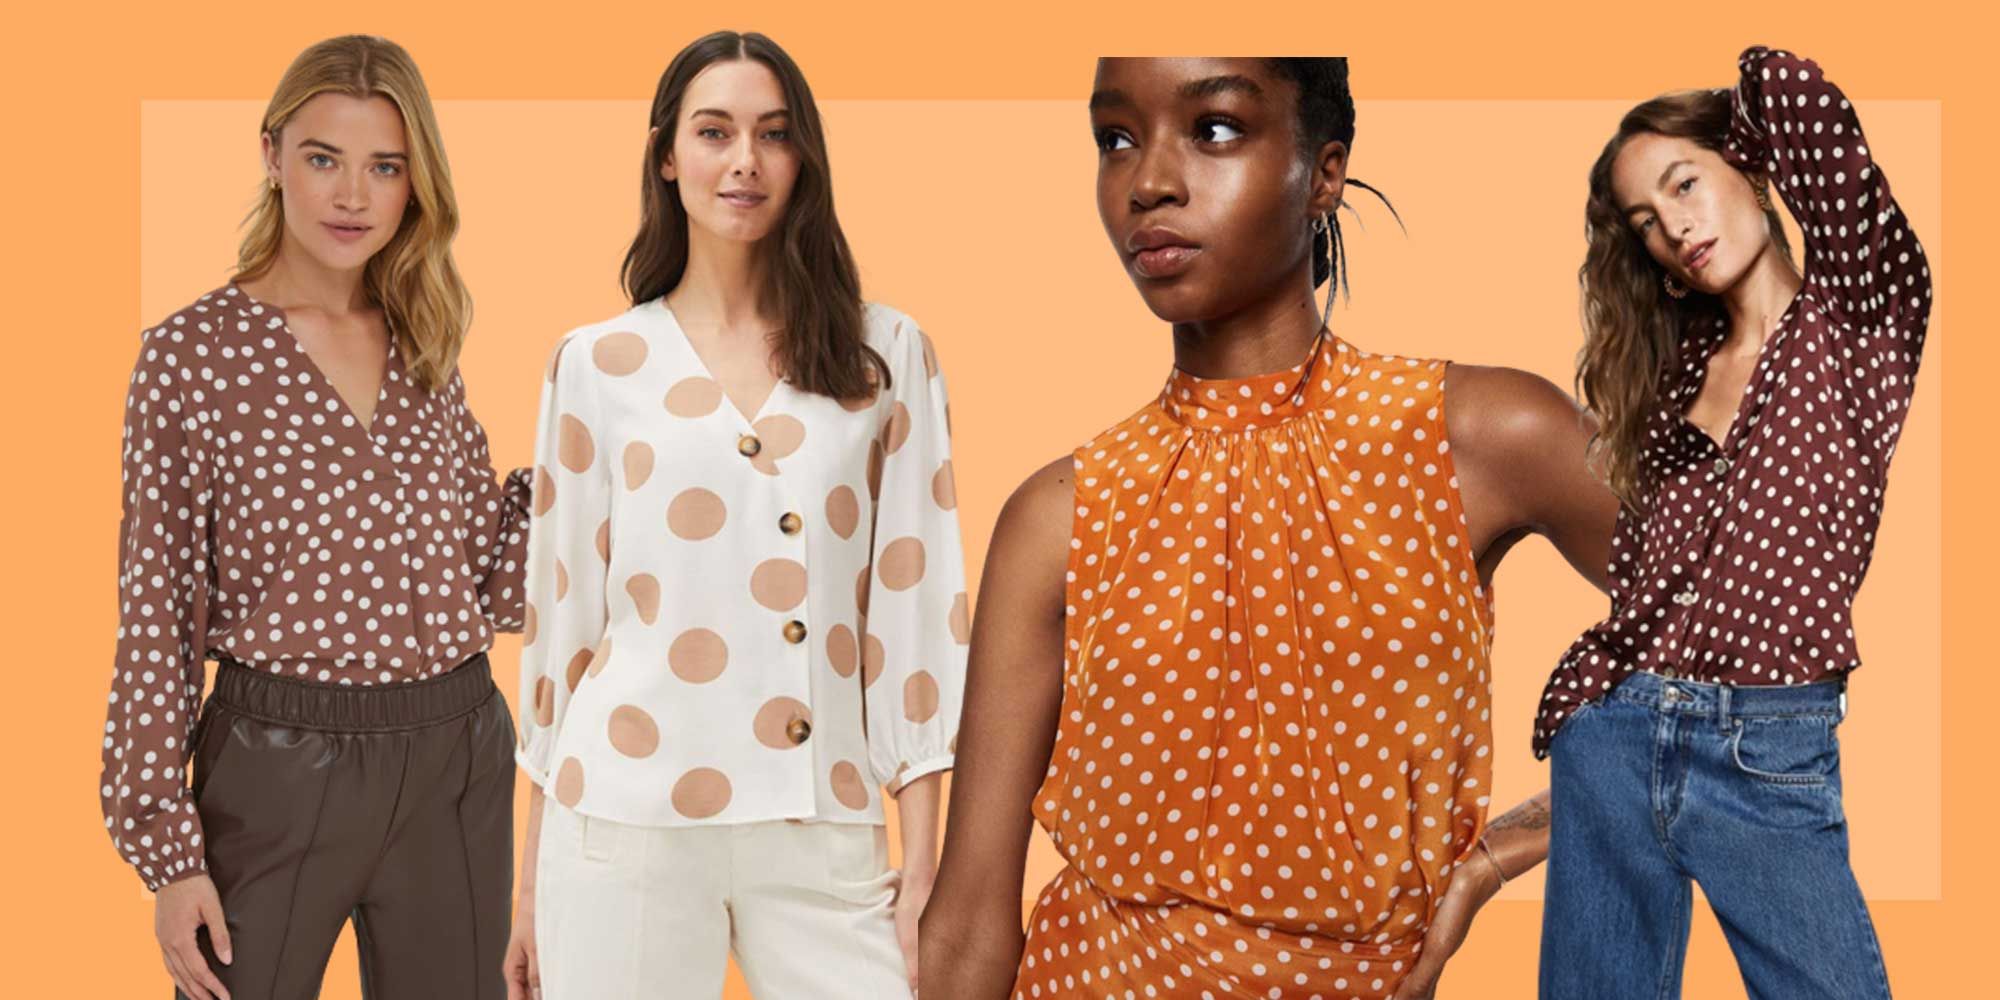 Polka dot blouse - Best polka dot tops for women